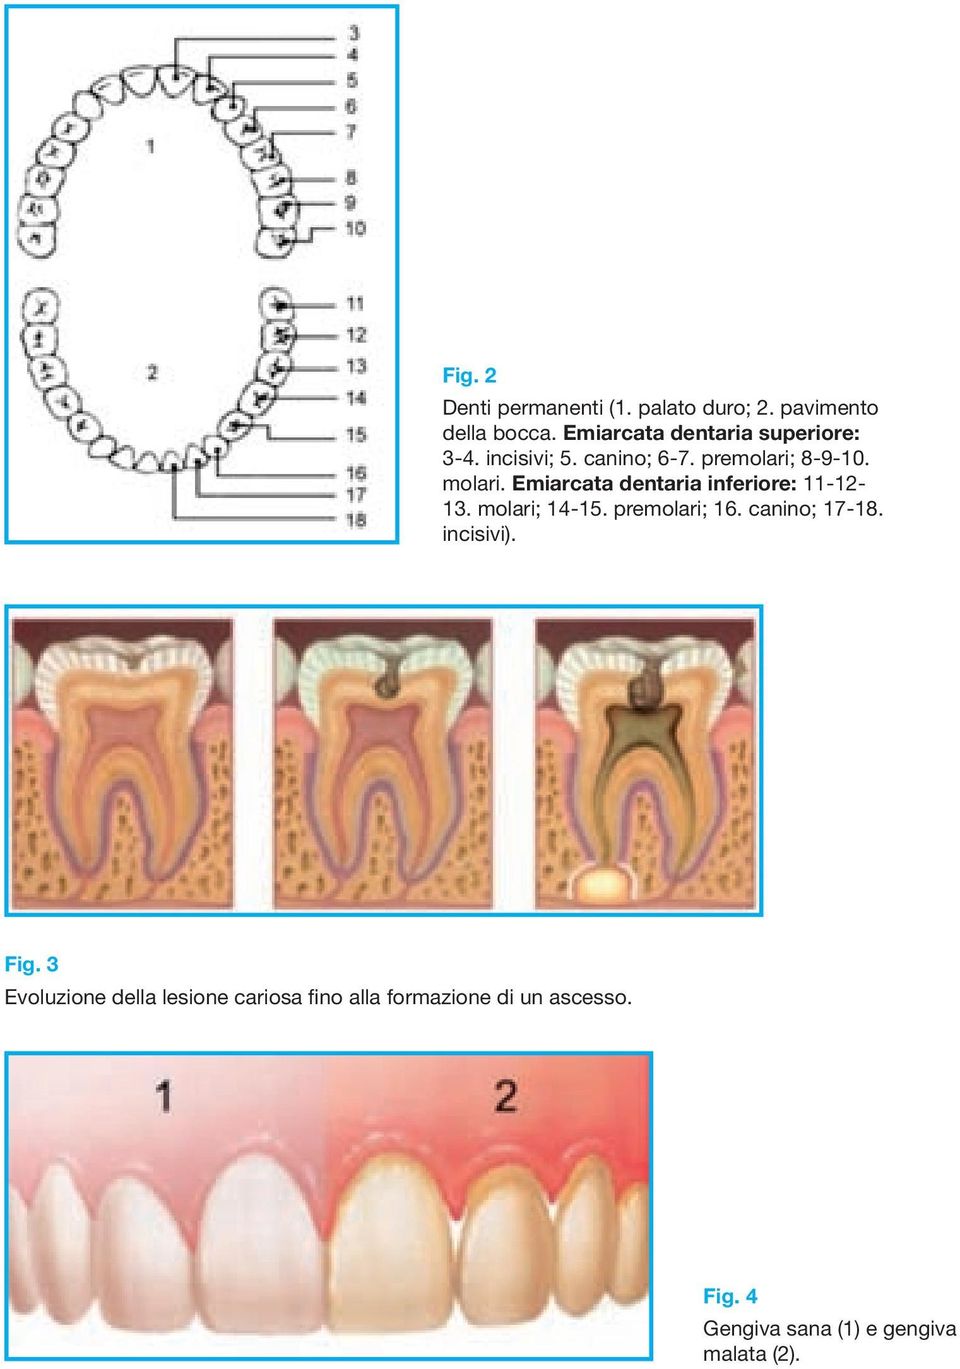 Emiarcata dentaria inferiore: 11-12- 13. molari; 14-15. premolari; 16. canino; 17-18.